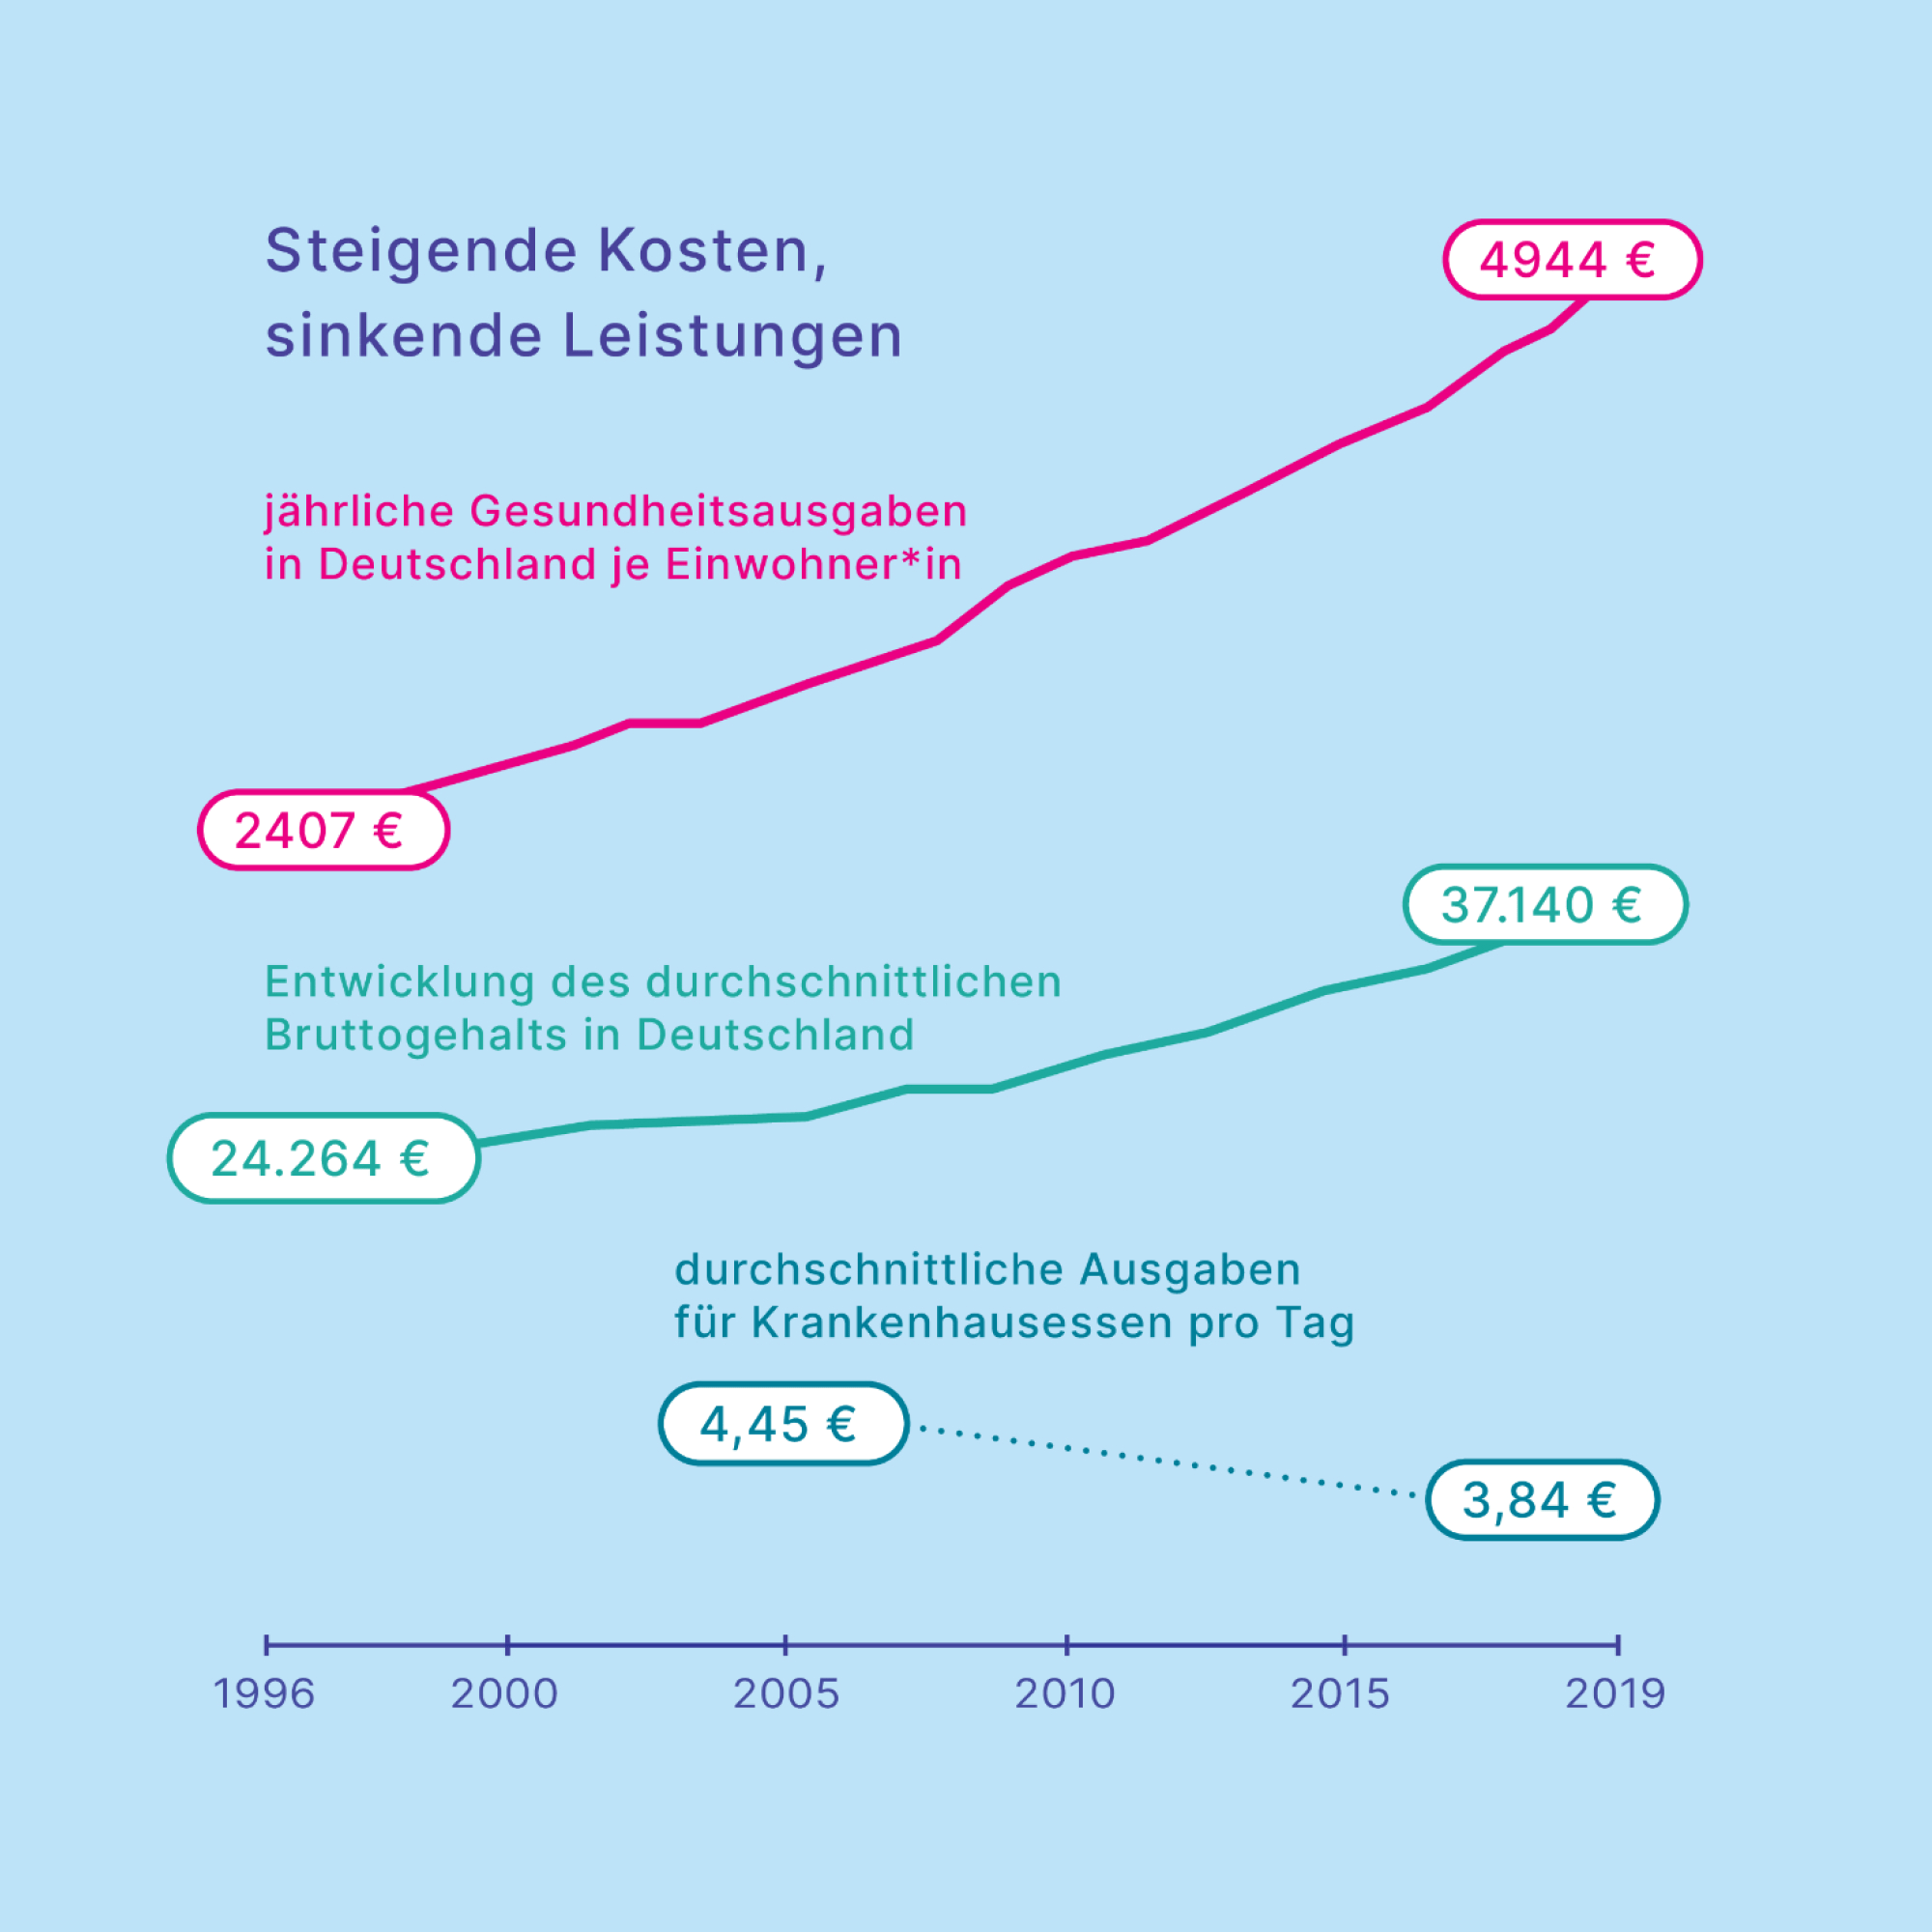 In den letzten 25 Jahren haben sich die Gesundheitsausgaben in Deutschland pro Einwohner*in verdoppelt, während die Leistungen gesunken sind.